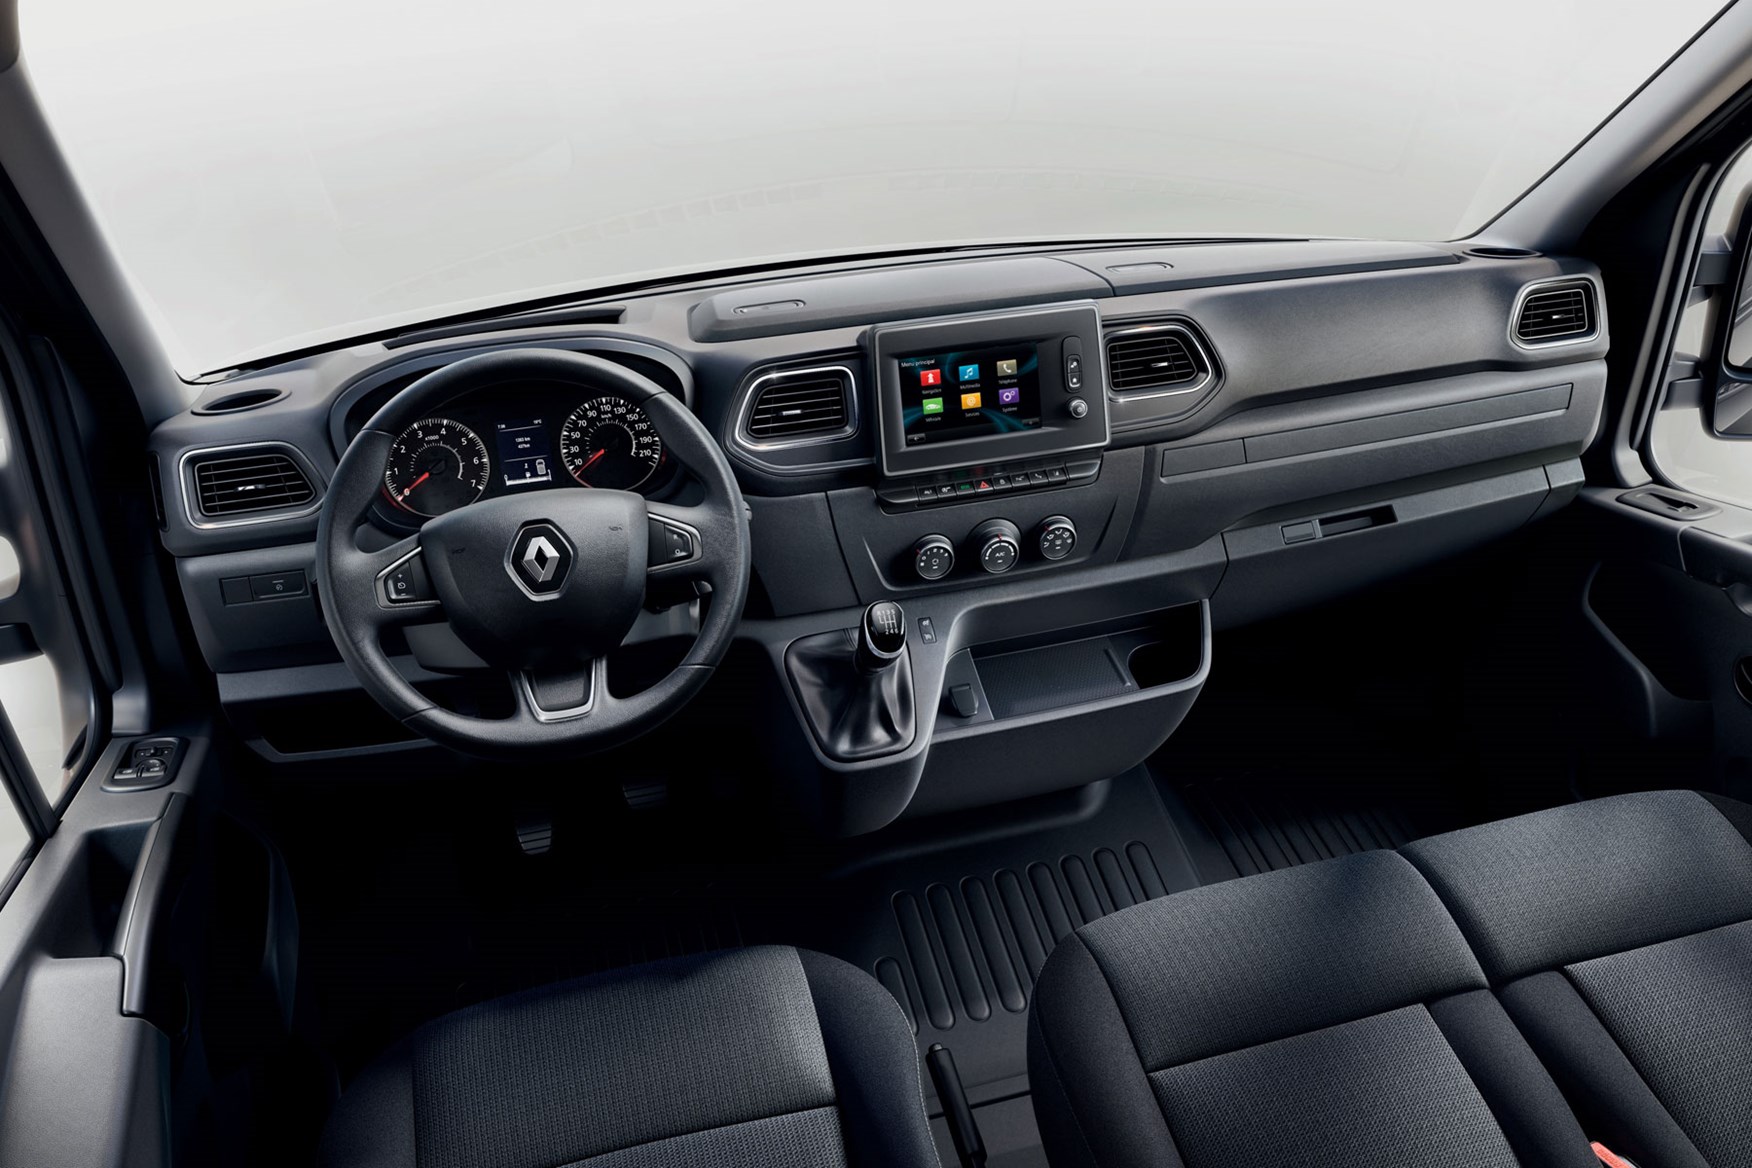 2019 Renault Master facelift – full 